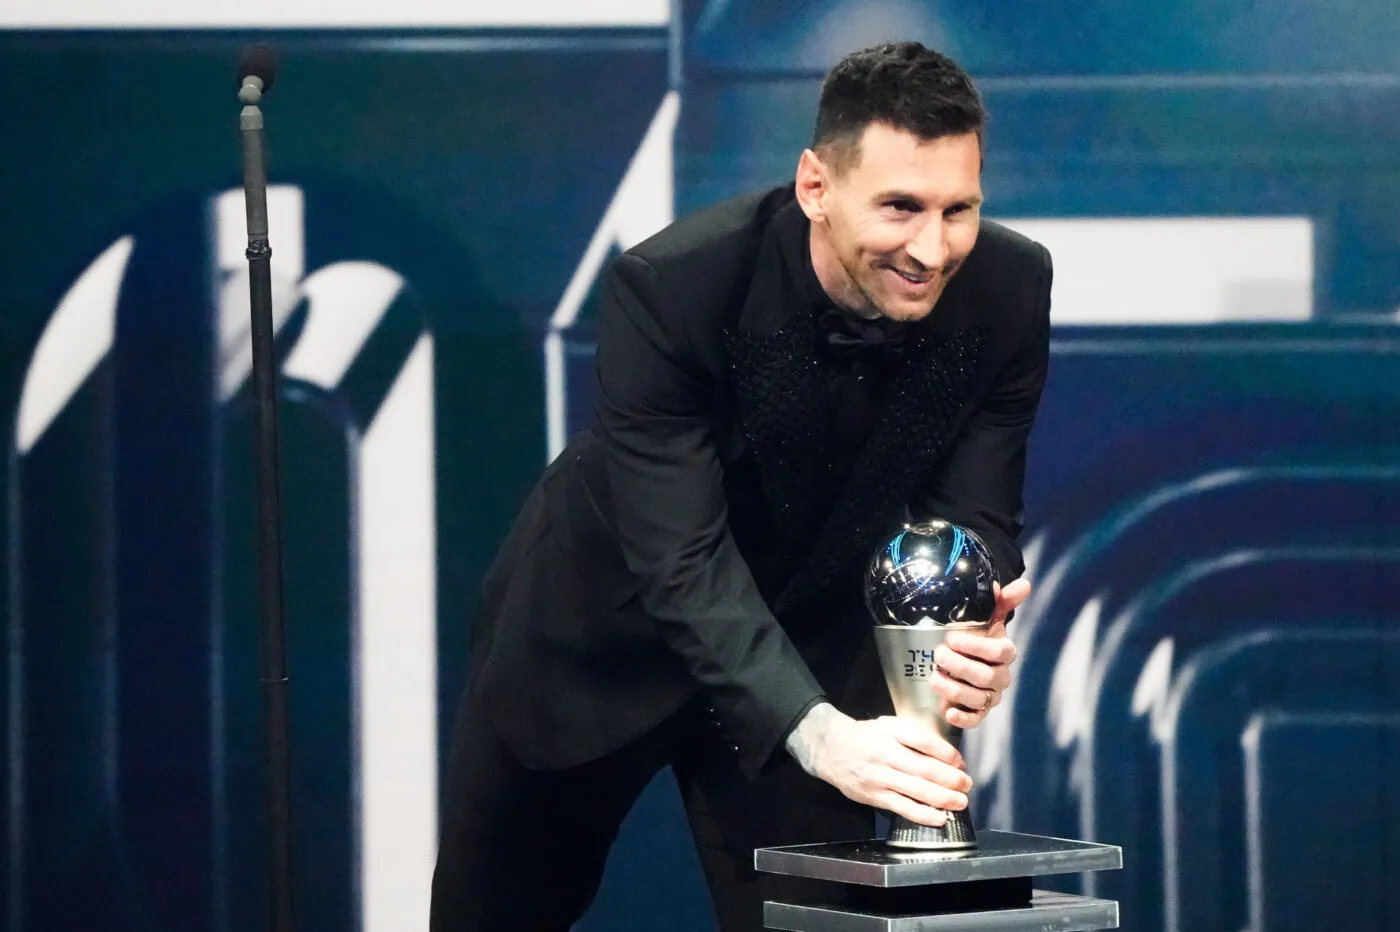 The Best : à égalité avec Haaland, Messi quand même sacré meilleur joueur